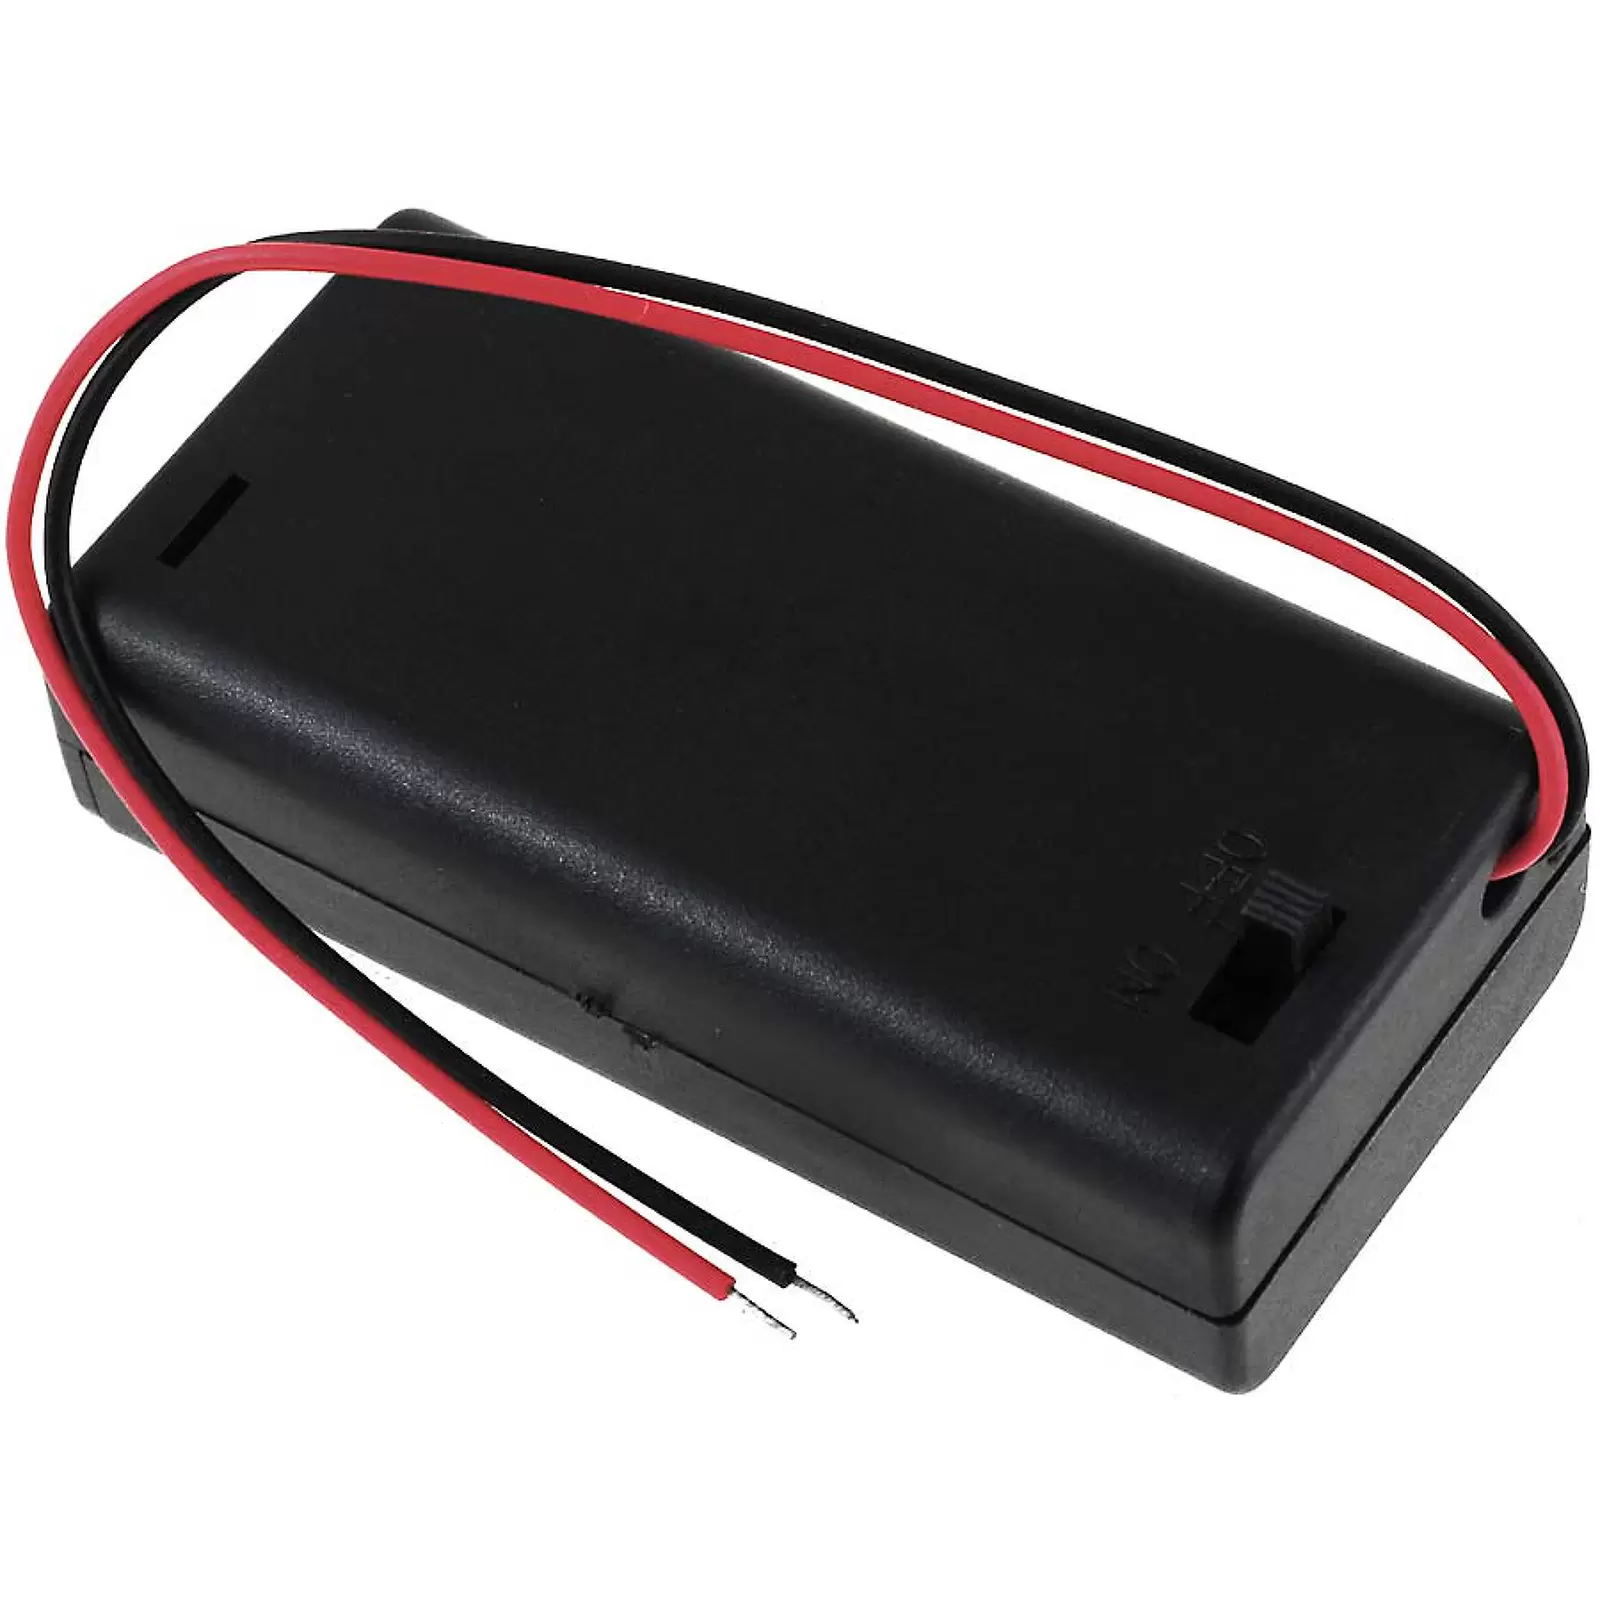 Batteriehalter für 2x Mignon/AA Batterien mit Anschlusskabel